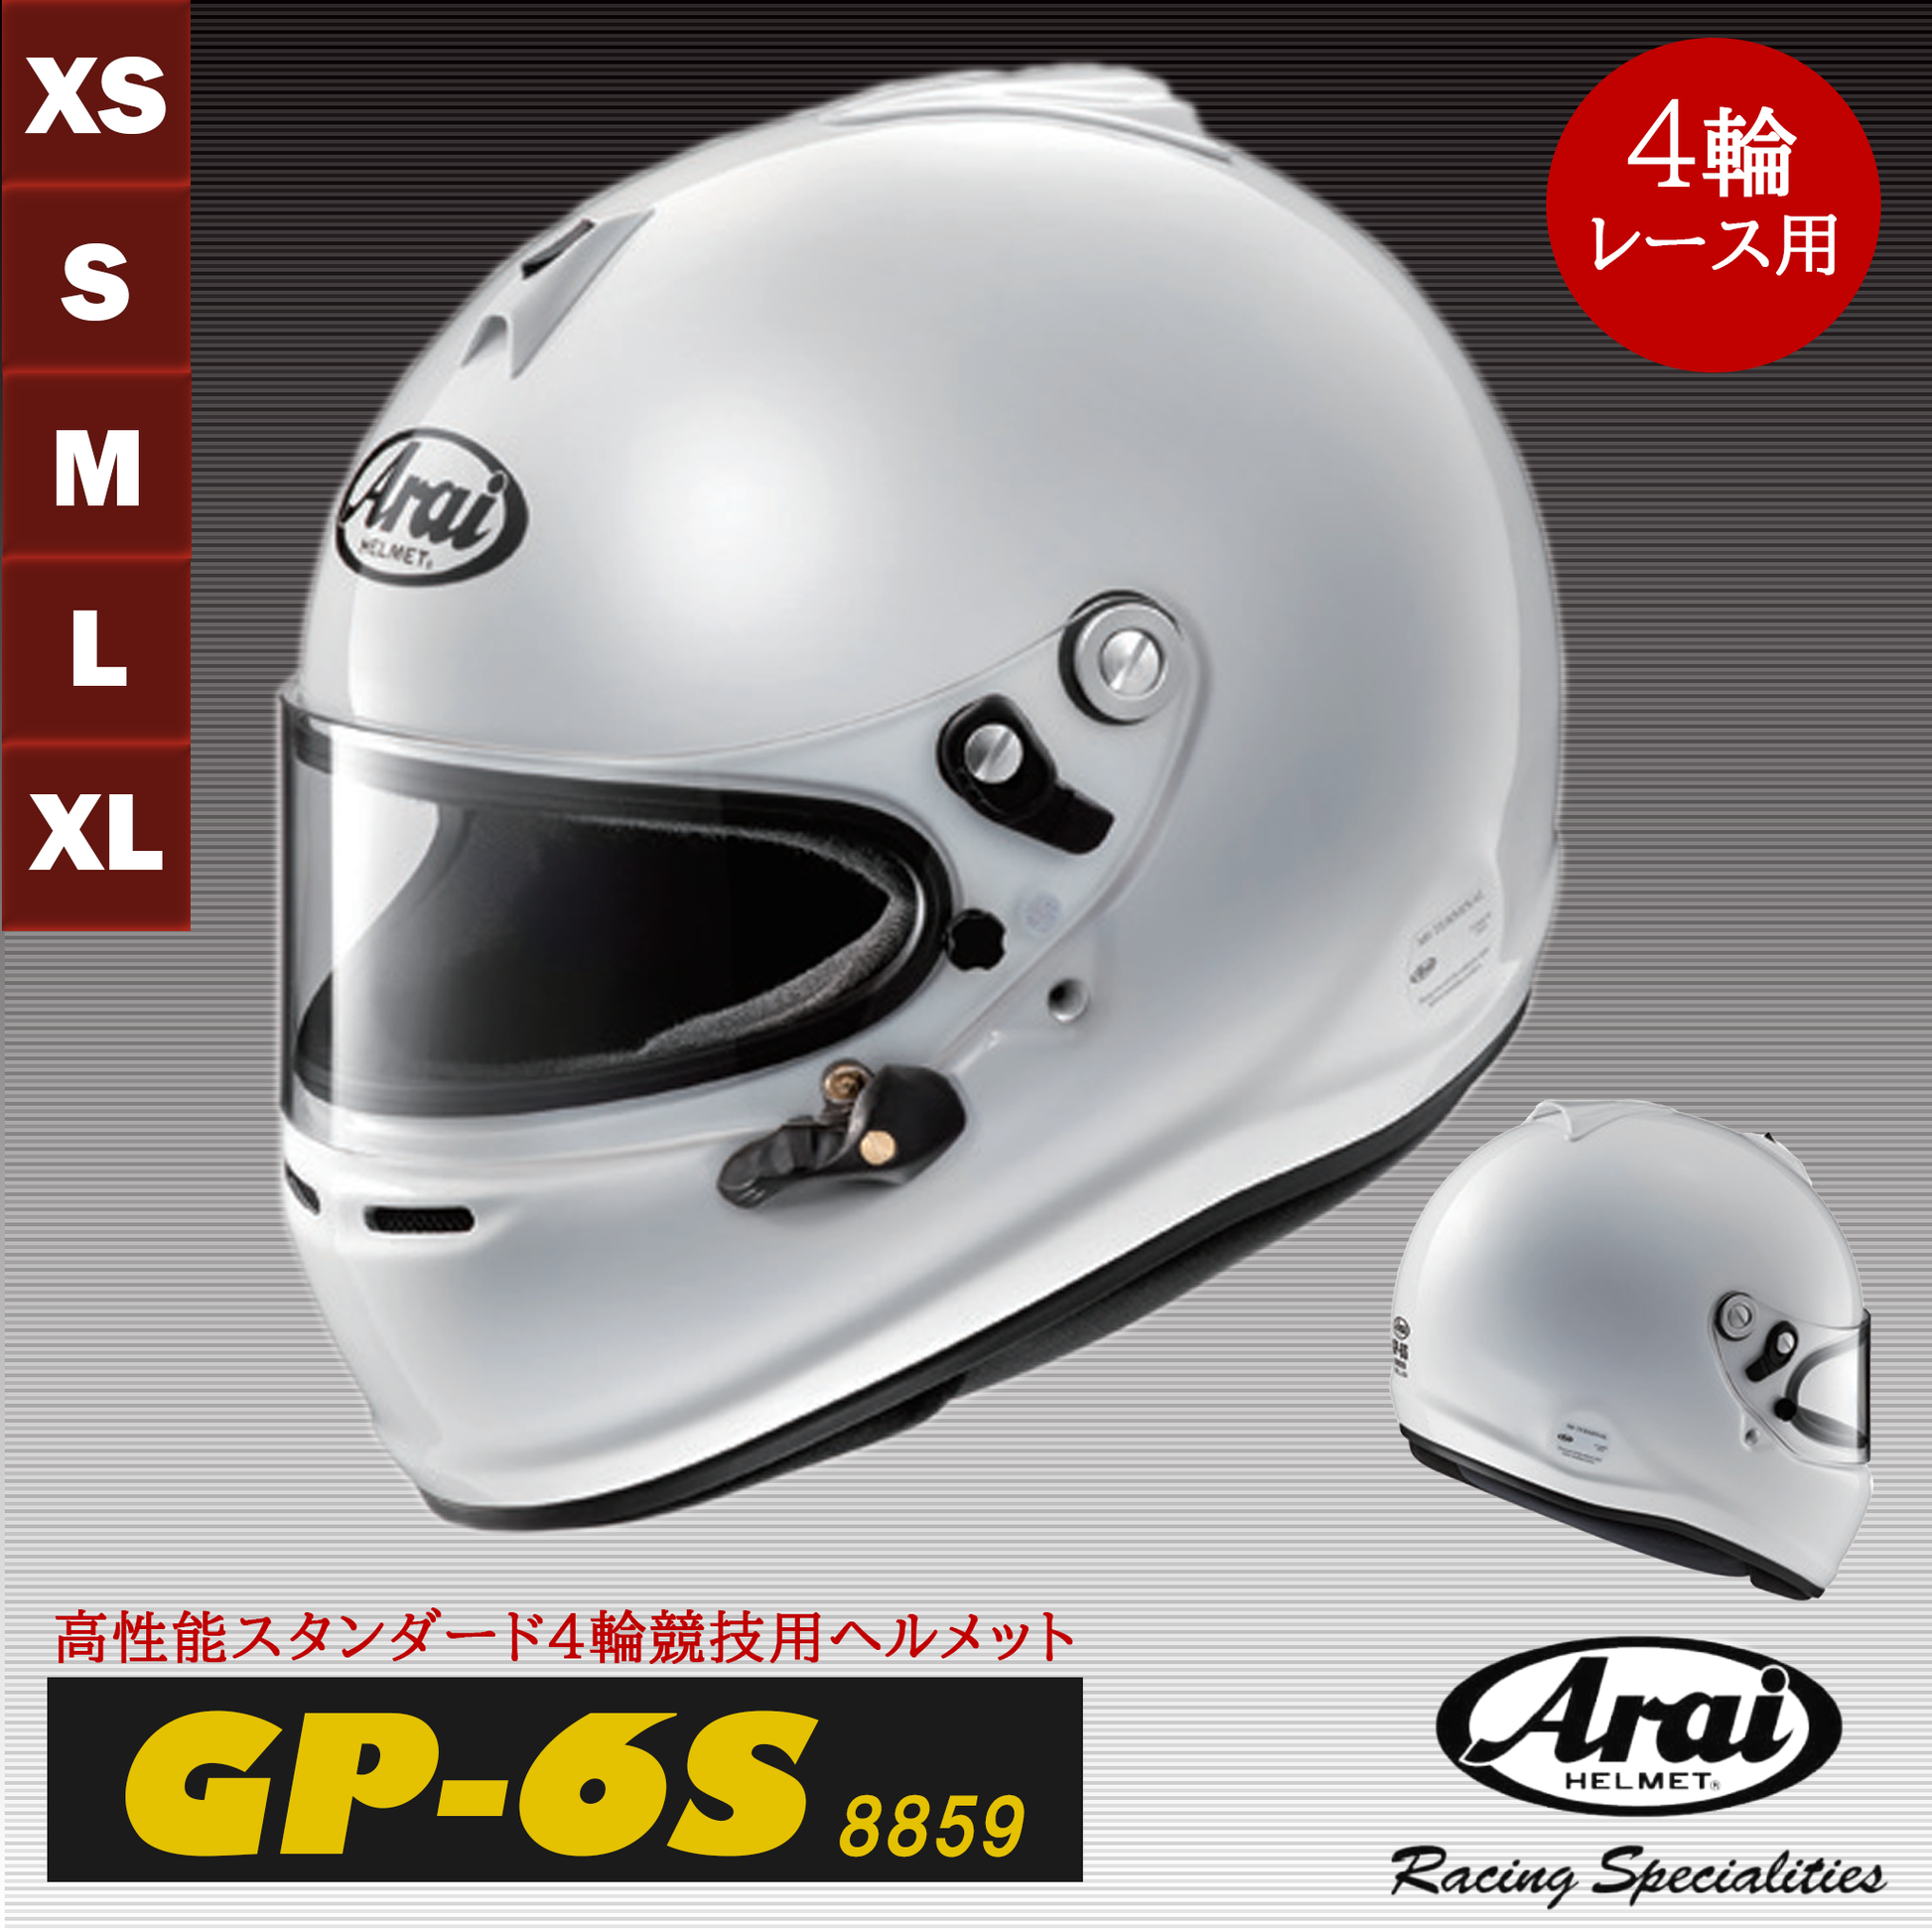 アライ ヘルメット GP-6S 8859 四輪車レース用 FIA8859規格ヘルメット 